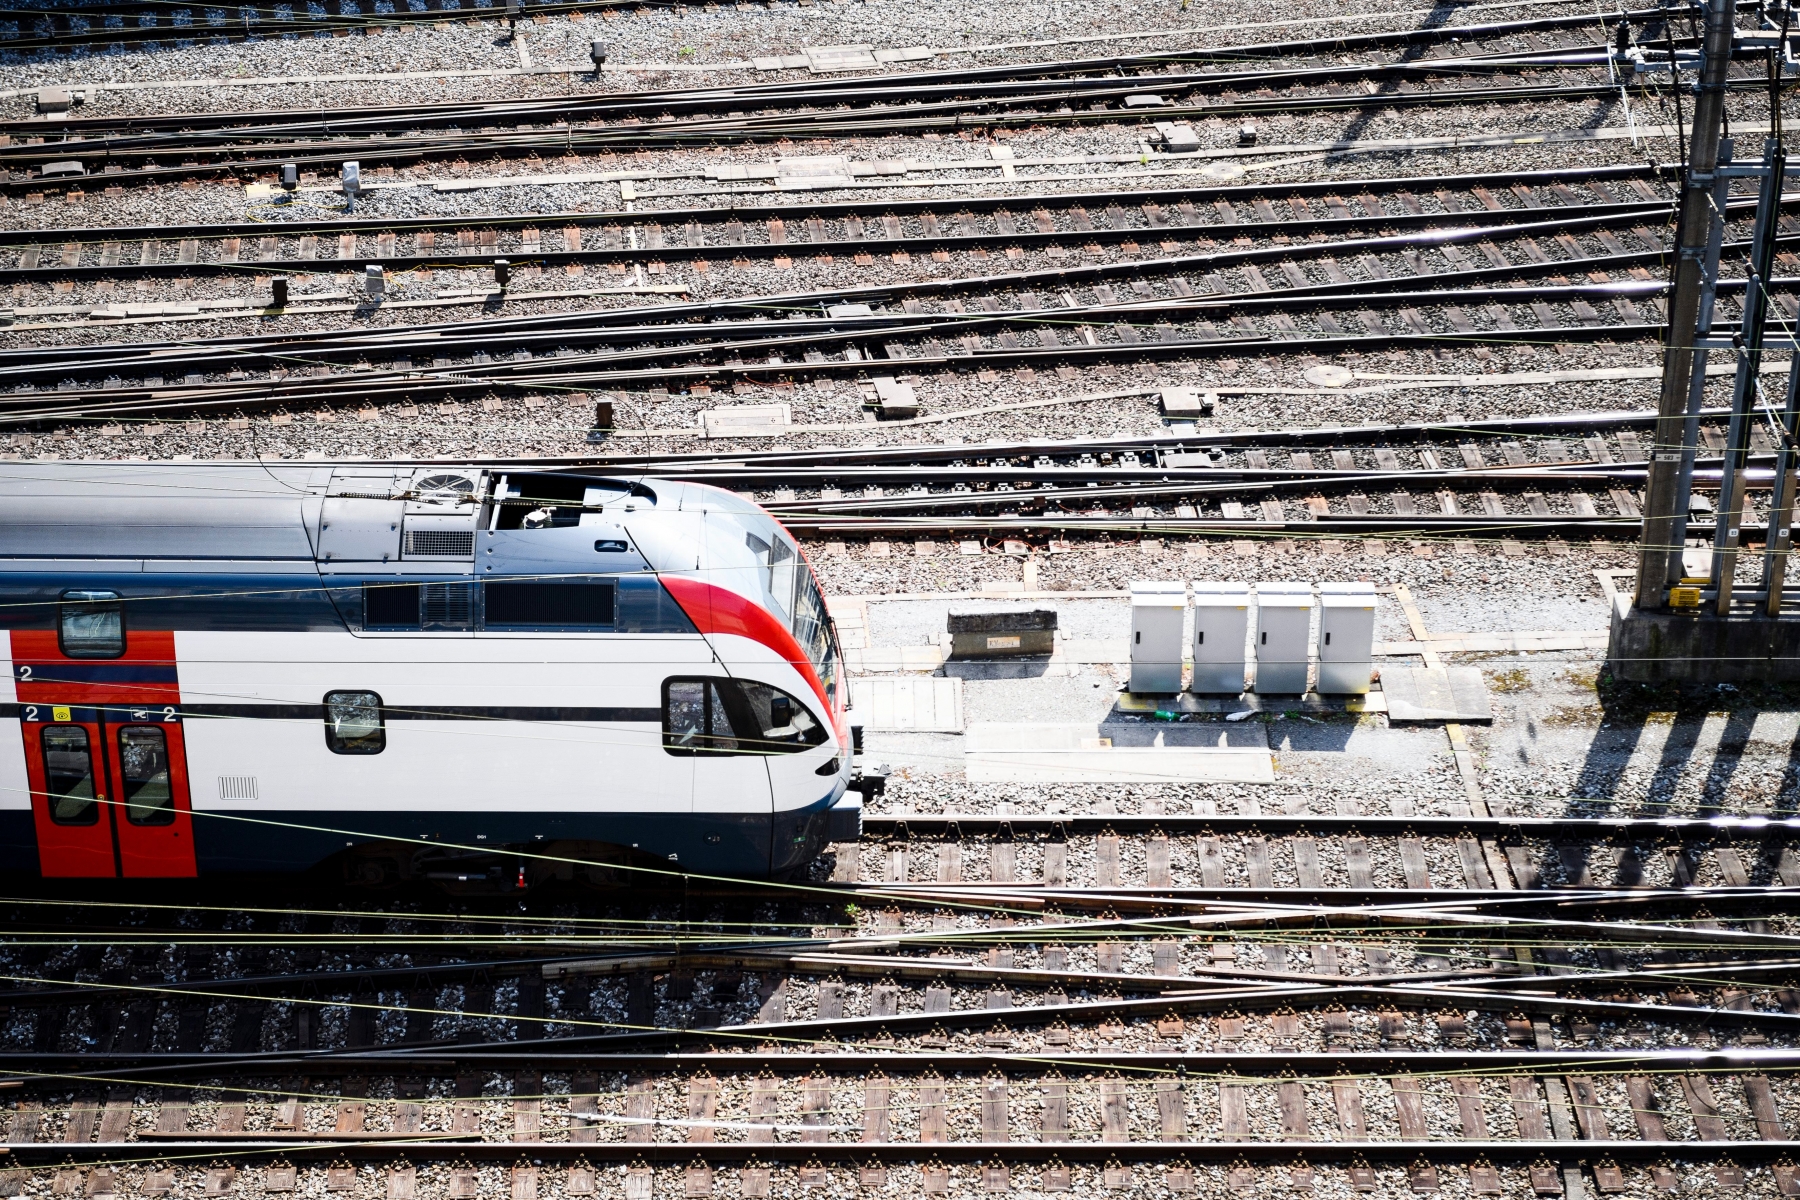 Ein Zug bei der Einfahrt in den Bahnhof Bern, fotografiert waehrend einer Medienkonferenz zur Thematik Fahrplangestaltung am Montag, 15. August 2016 in Bern. (KEYSTONE/Manuel Lopez) SCHWEIZ SBB FAHRPLAN MEDIENKONFERENZ